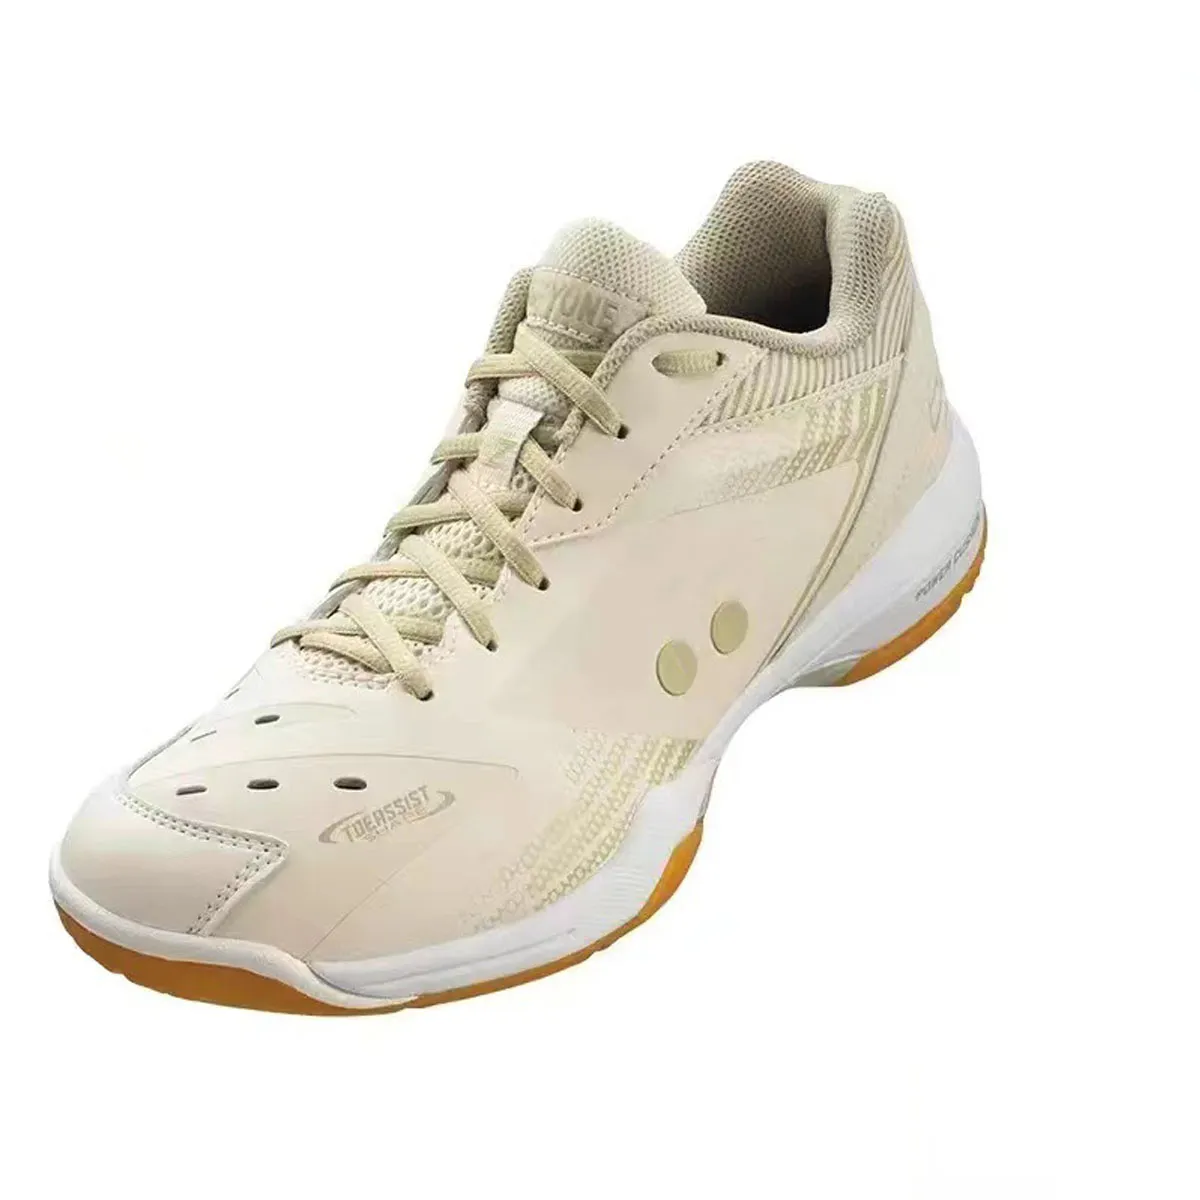 Buty na buty do sneakerów buty Yune odpowiednie do pieszych wędrówek, alpinistyki, badmintona, tenisowego sportów i damskich butów sportowych